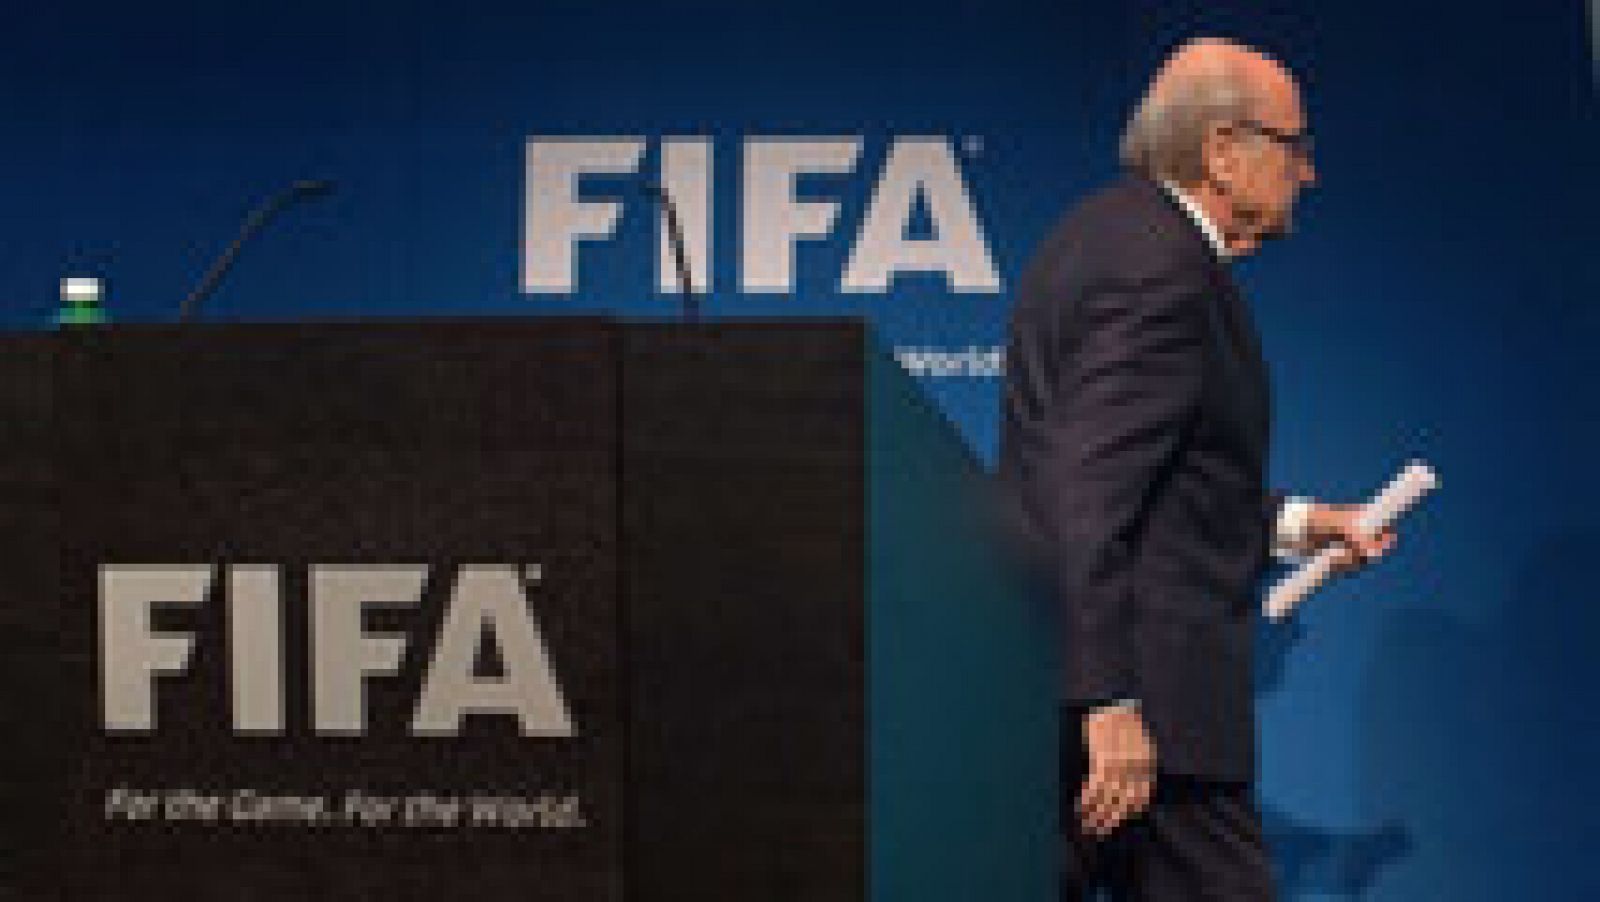 El presidente de la FIFA, Joseph Blatter, anunció este martes en rueda de prensa que pone su cargo a disposición del organismo e informó de que habrá un congreso extraordinario para elegir al nuevo mandatario del máximo organismo futbolístico mundial. El suizo también dejará de ser miembro del Comité Olímpico Internacional (COI), organismo al que pertenece en razón de su cargo federativo.